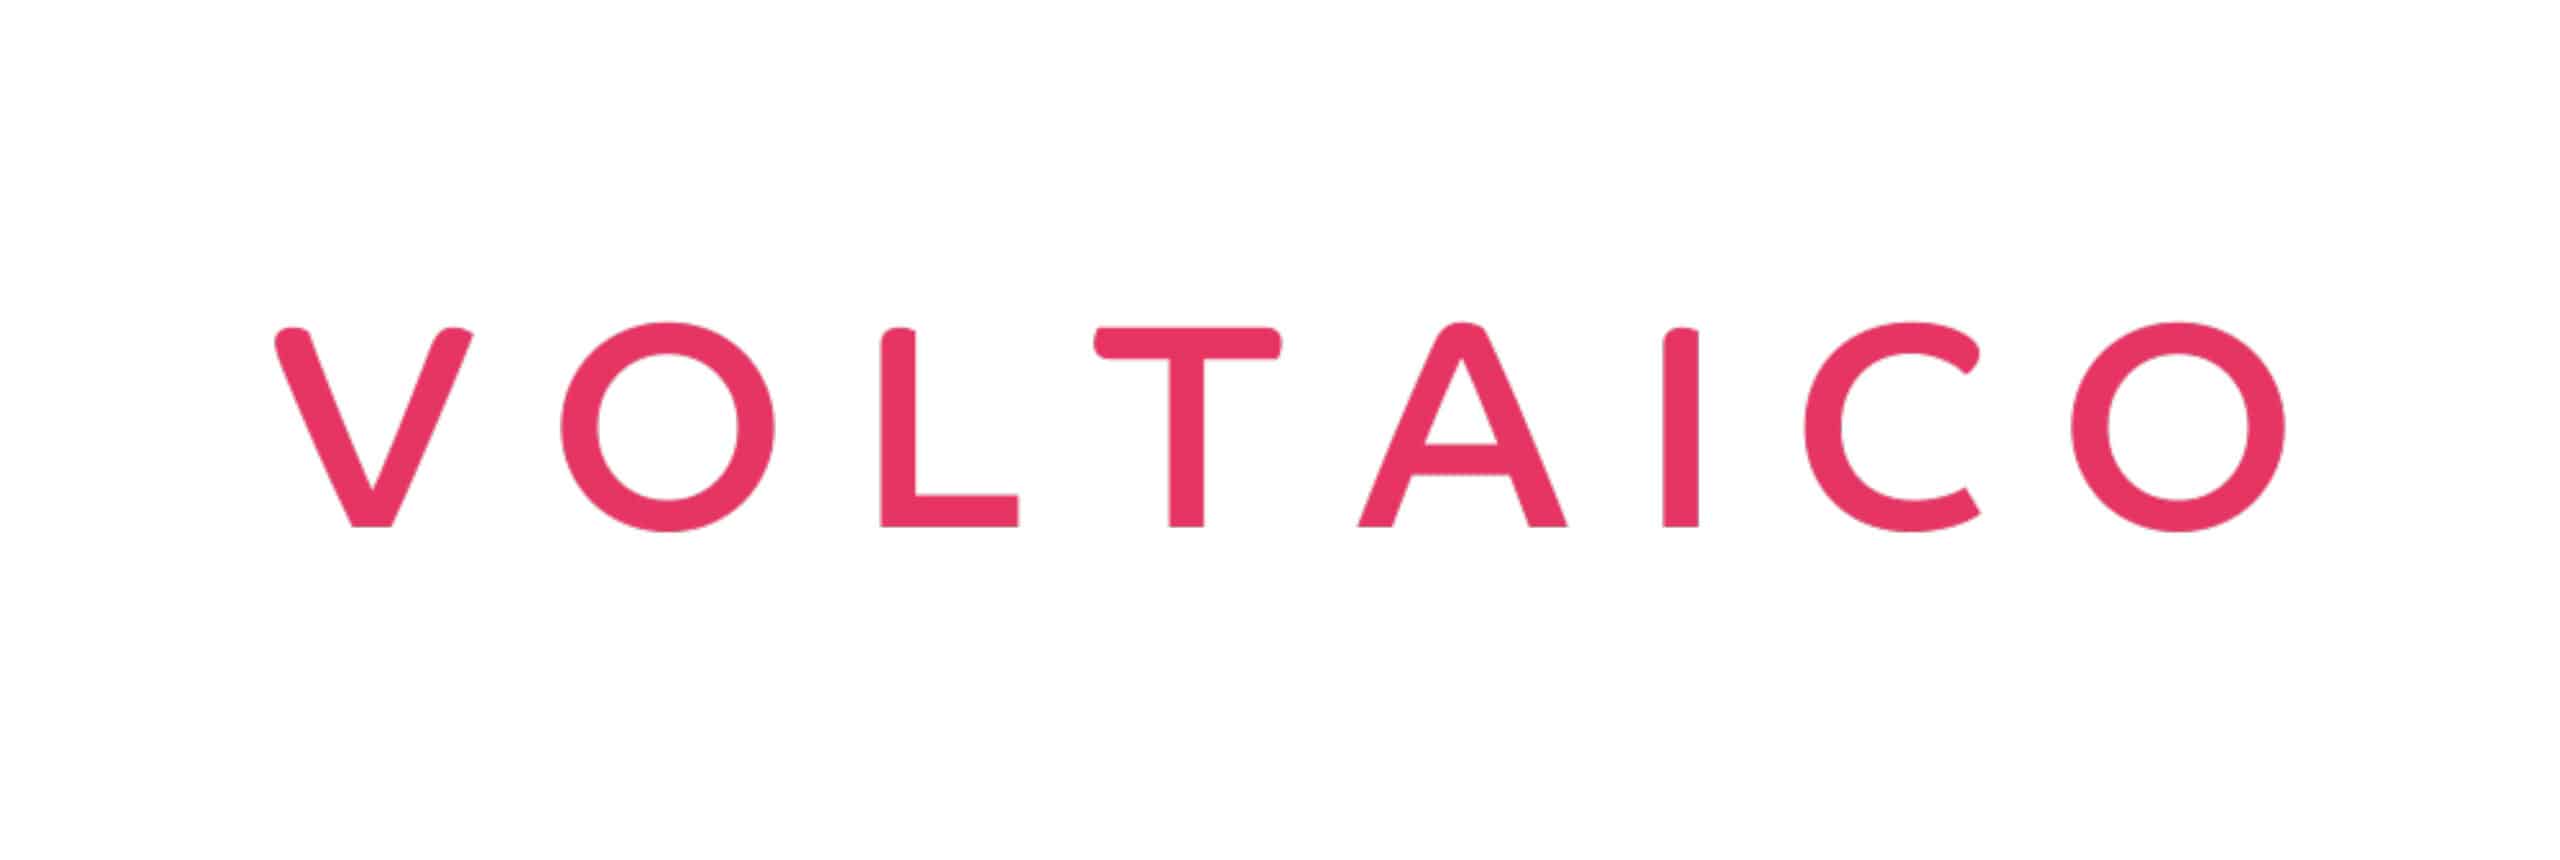 Voltaico Logo